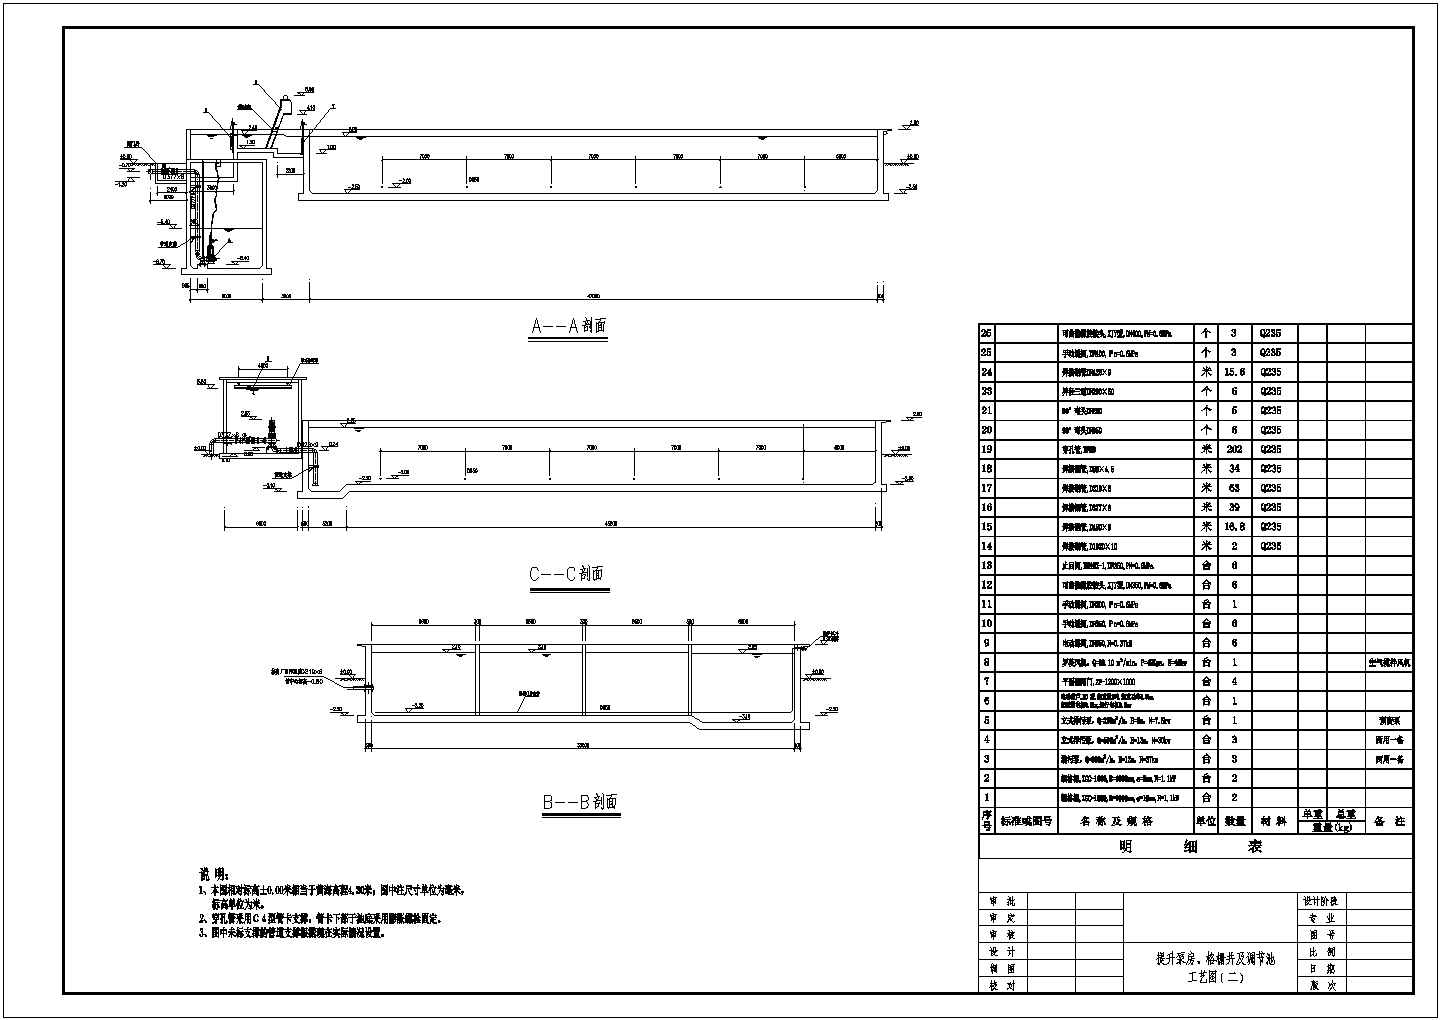 江苏某污水处理厂设计图提升泵房格栅井调节池CAD环保节点图